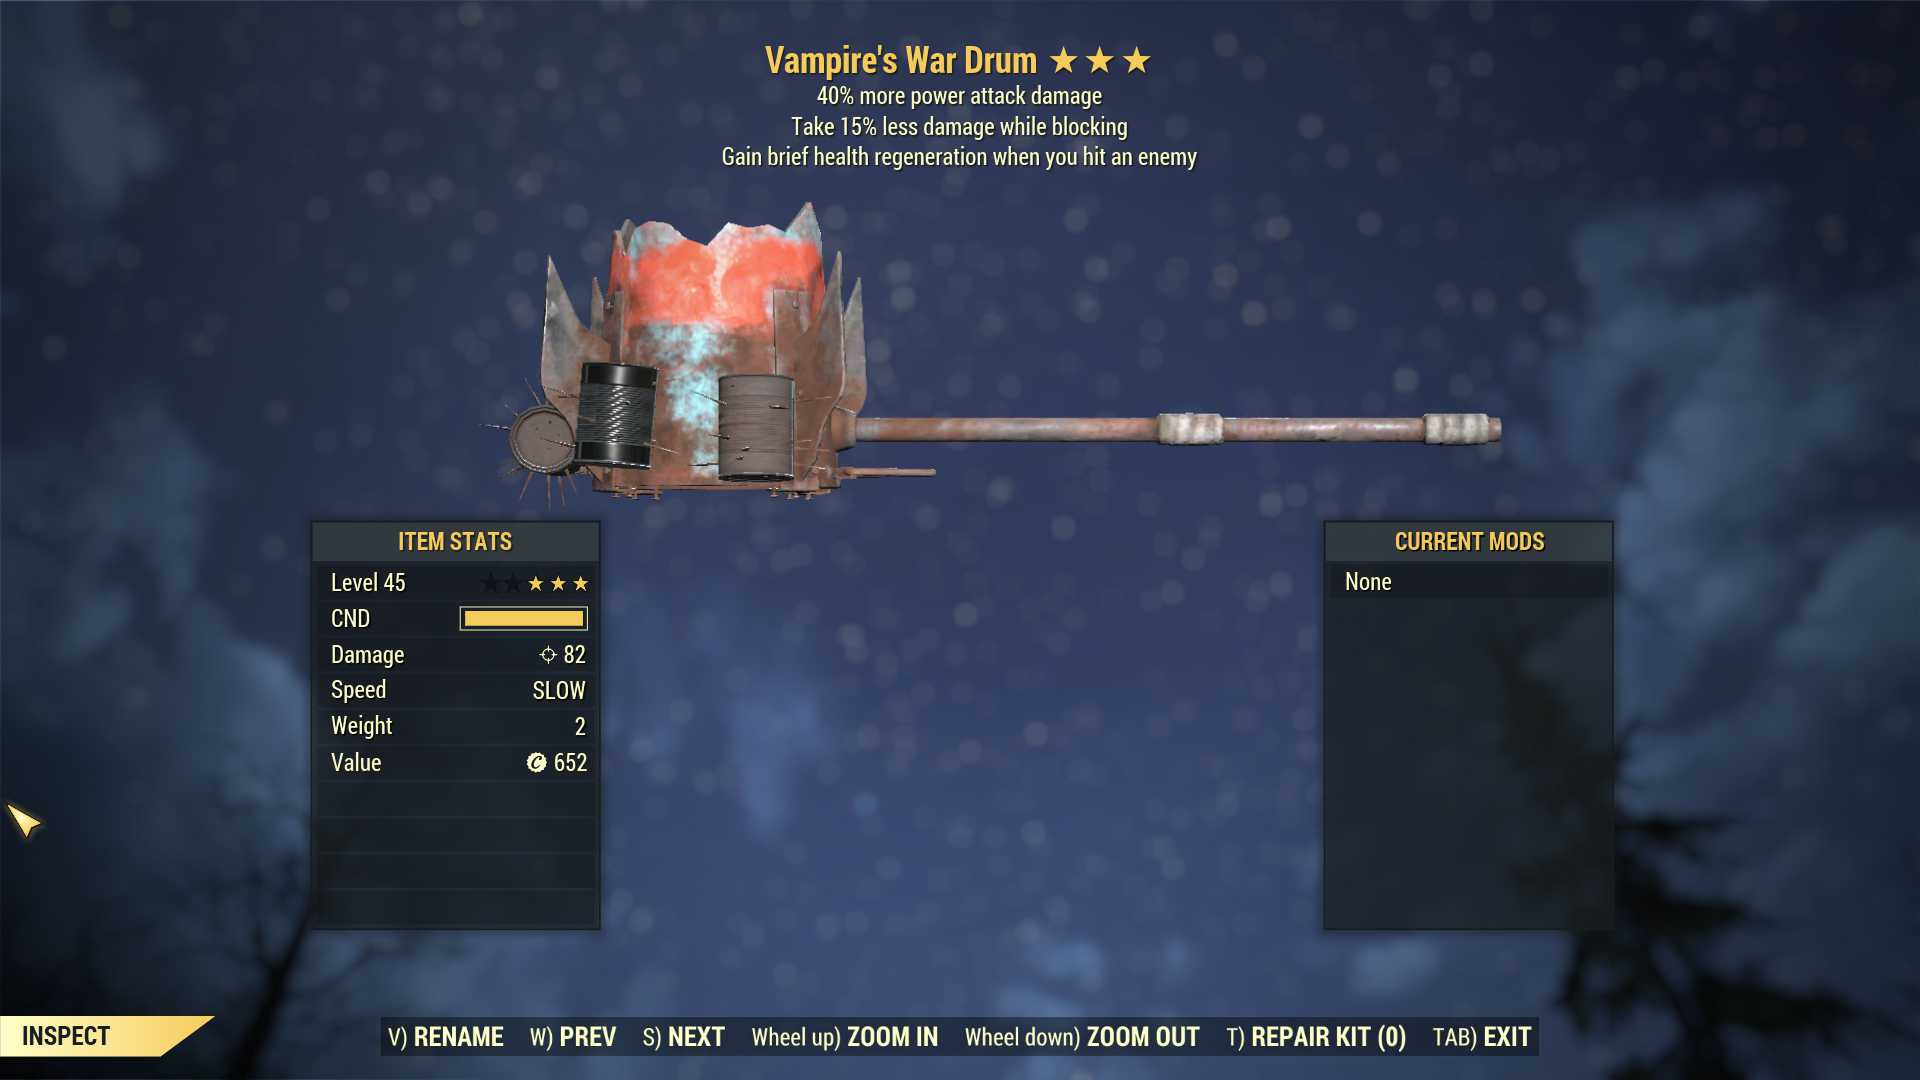 Vampire's War Drum (+40% damage PA, Take 15% less damage WB)